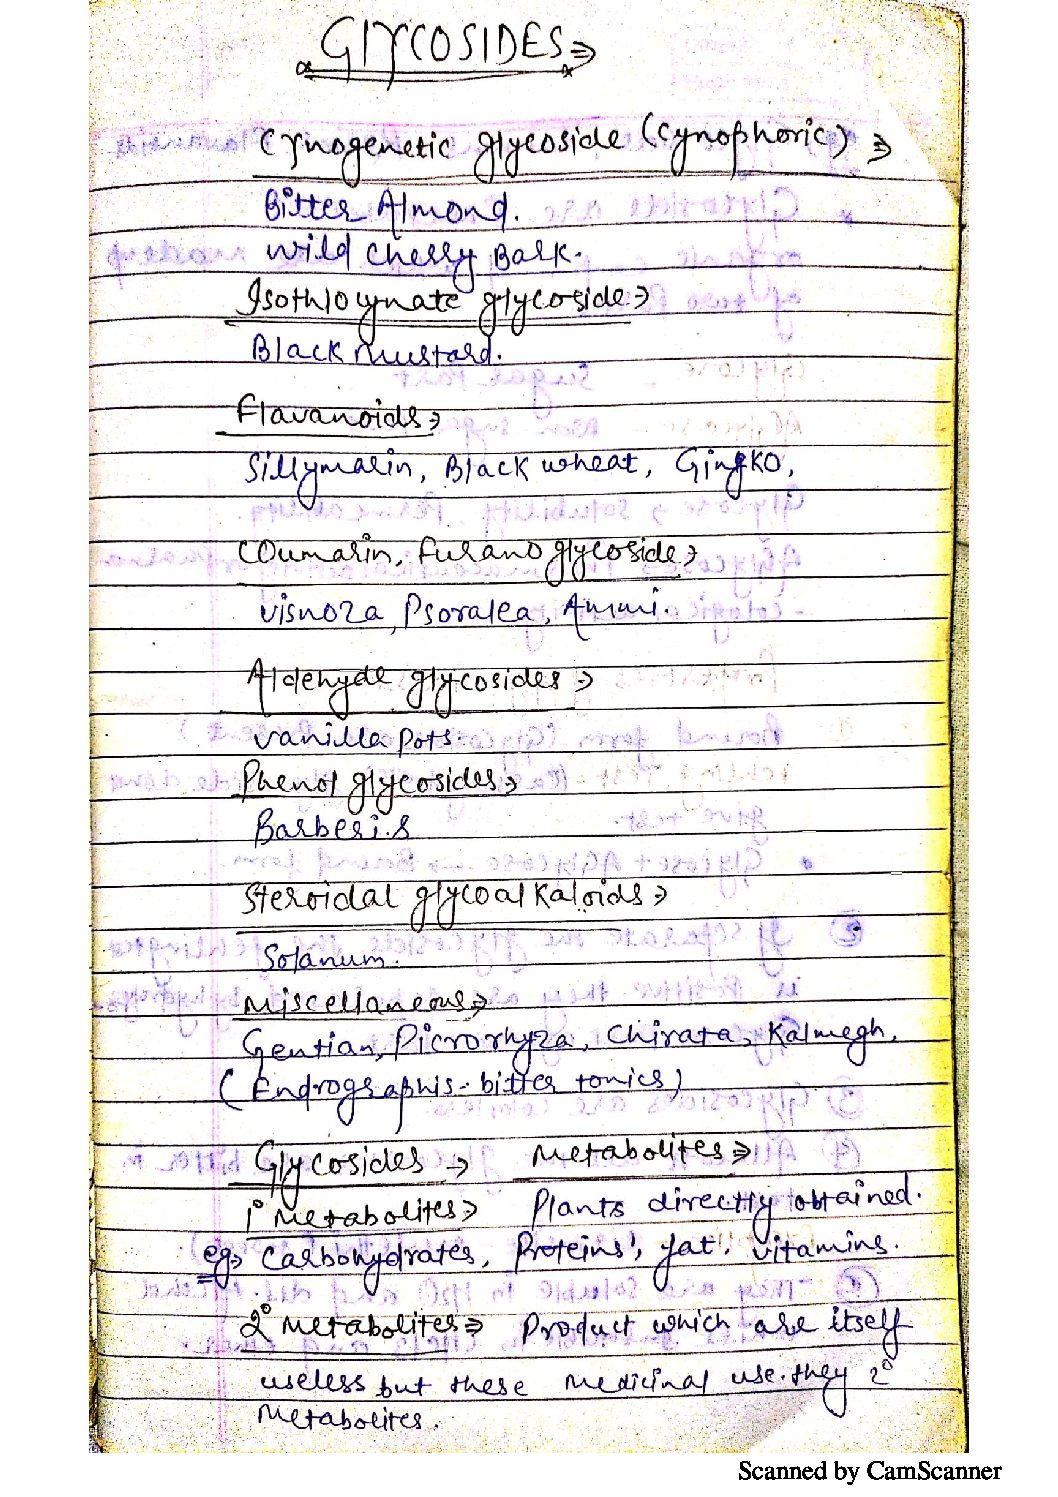 unit 1 Glycosides pharmacognosy Pharm 364. pdf Glycosides:- Hand Written Notes